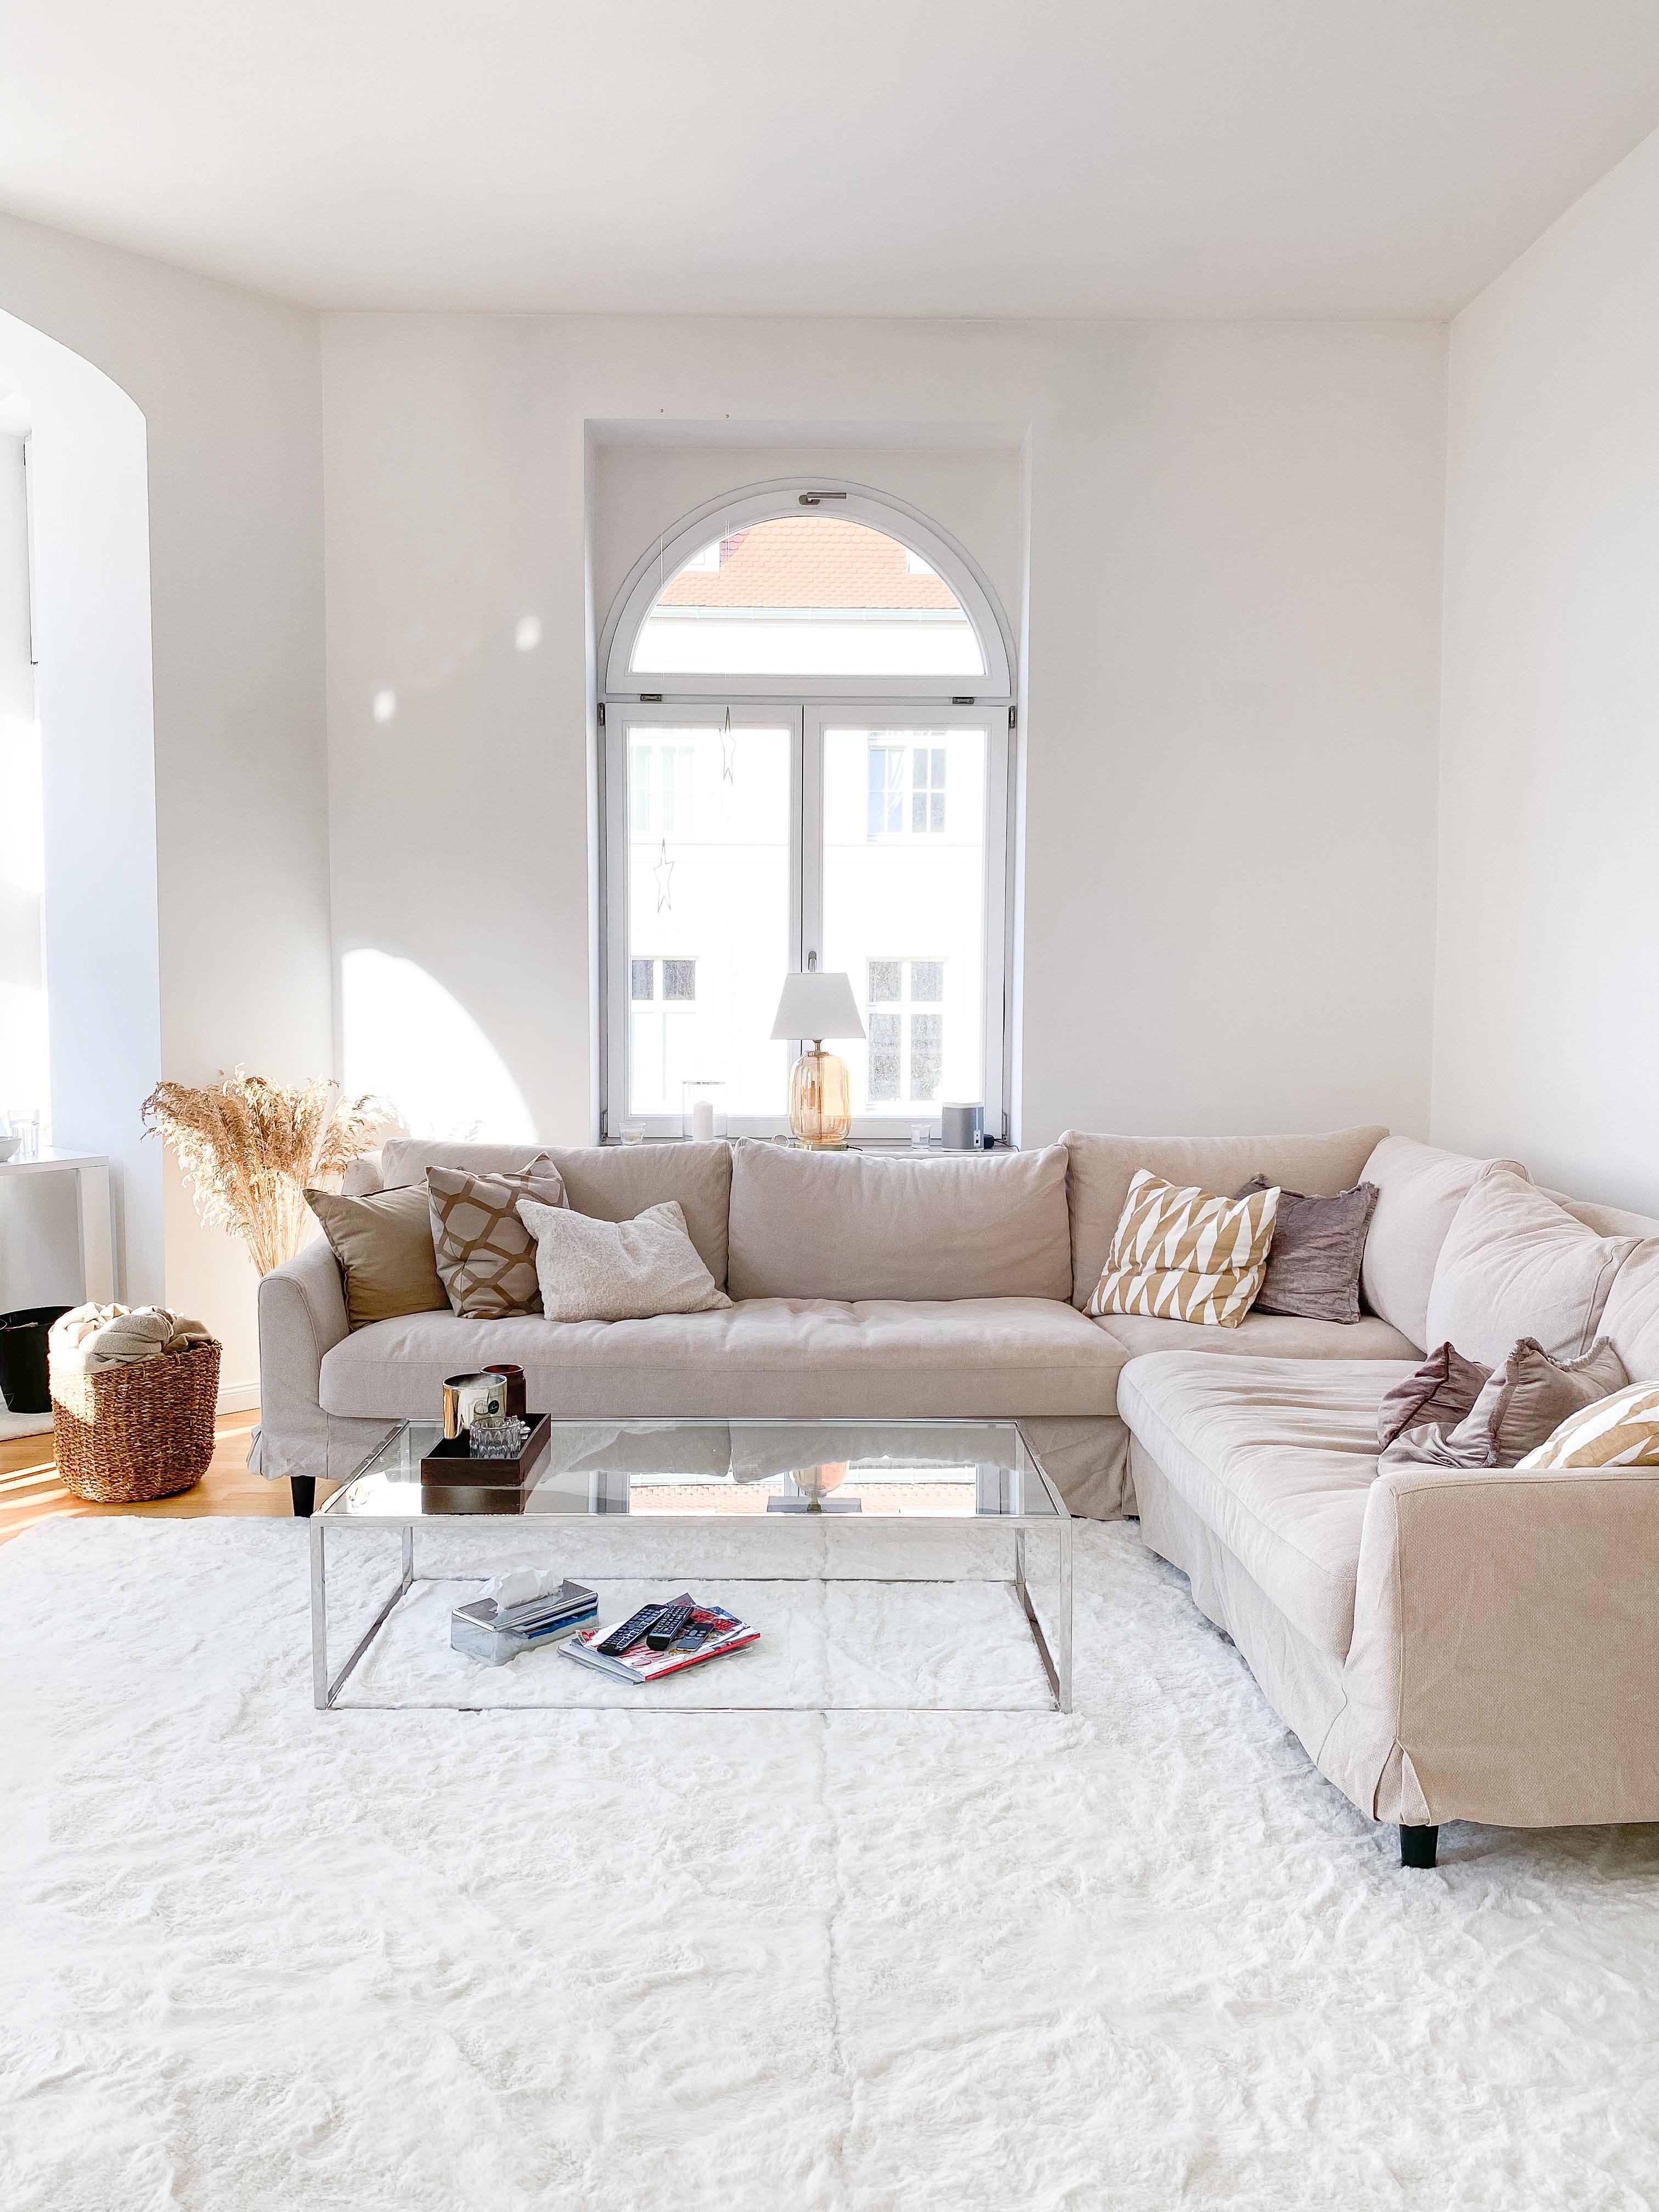 #wohnzimmer #livingroom #couch #altbau #cozy 